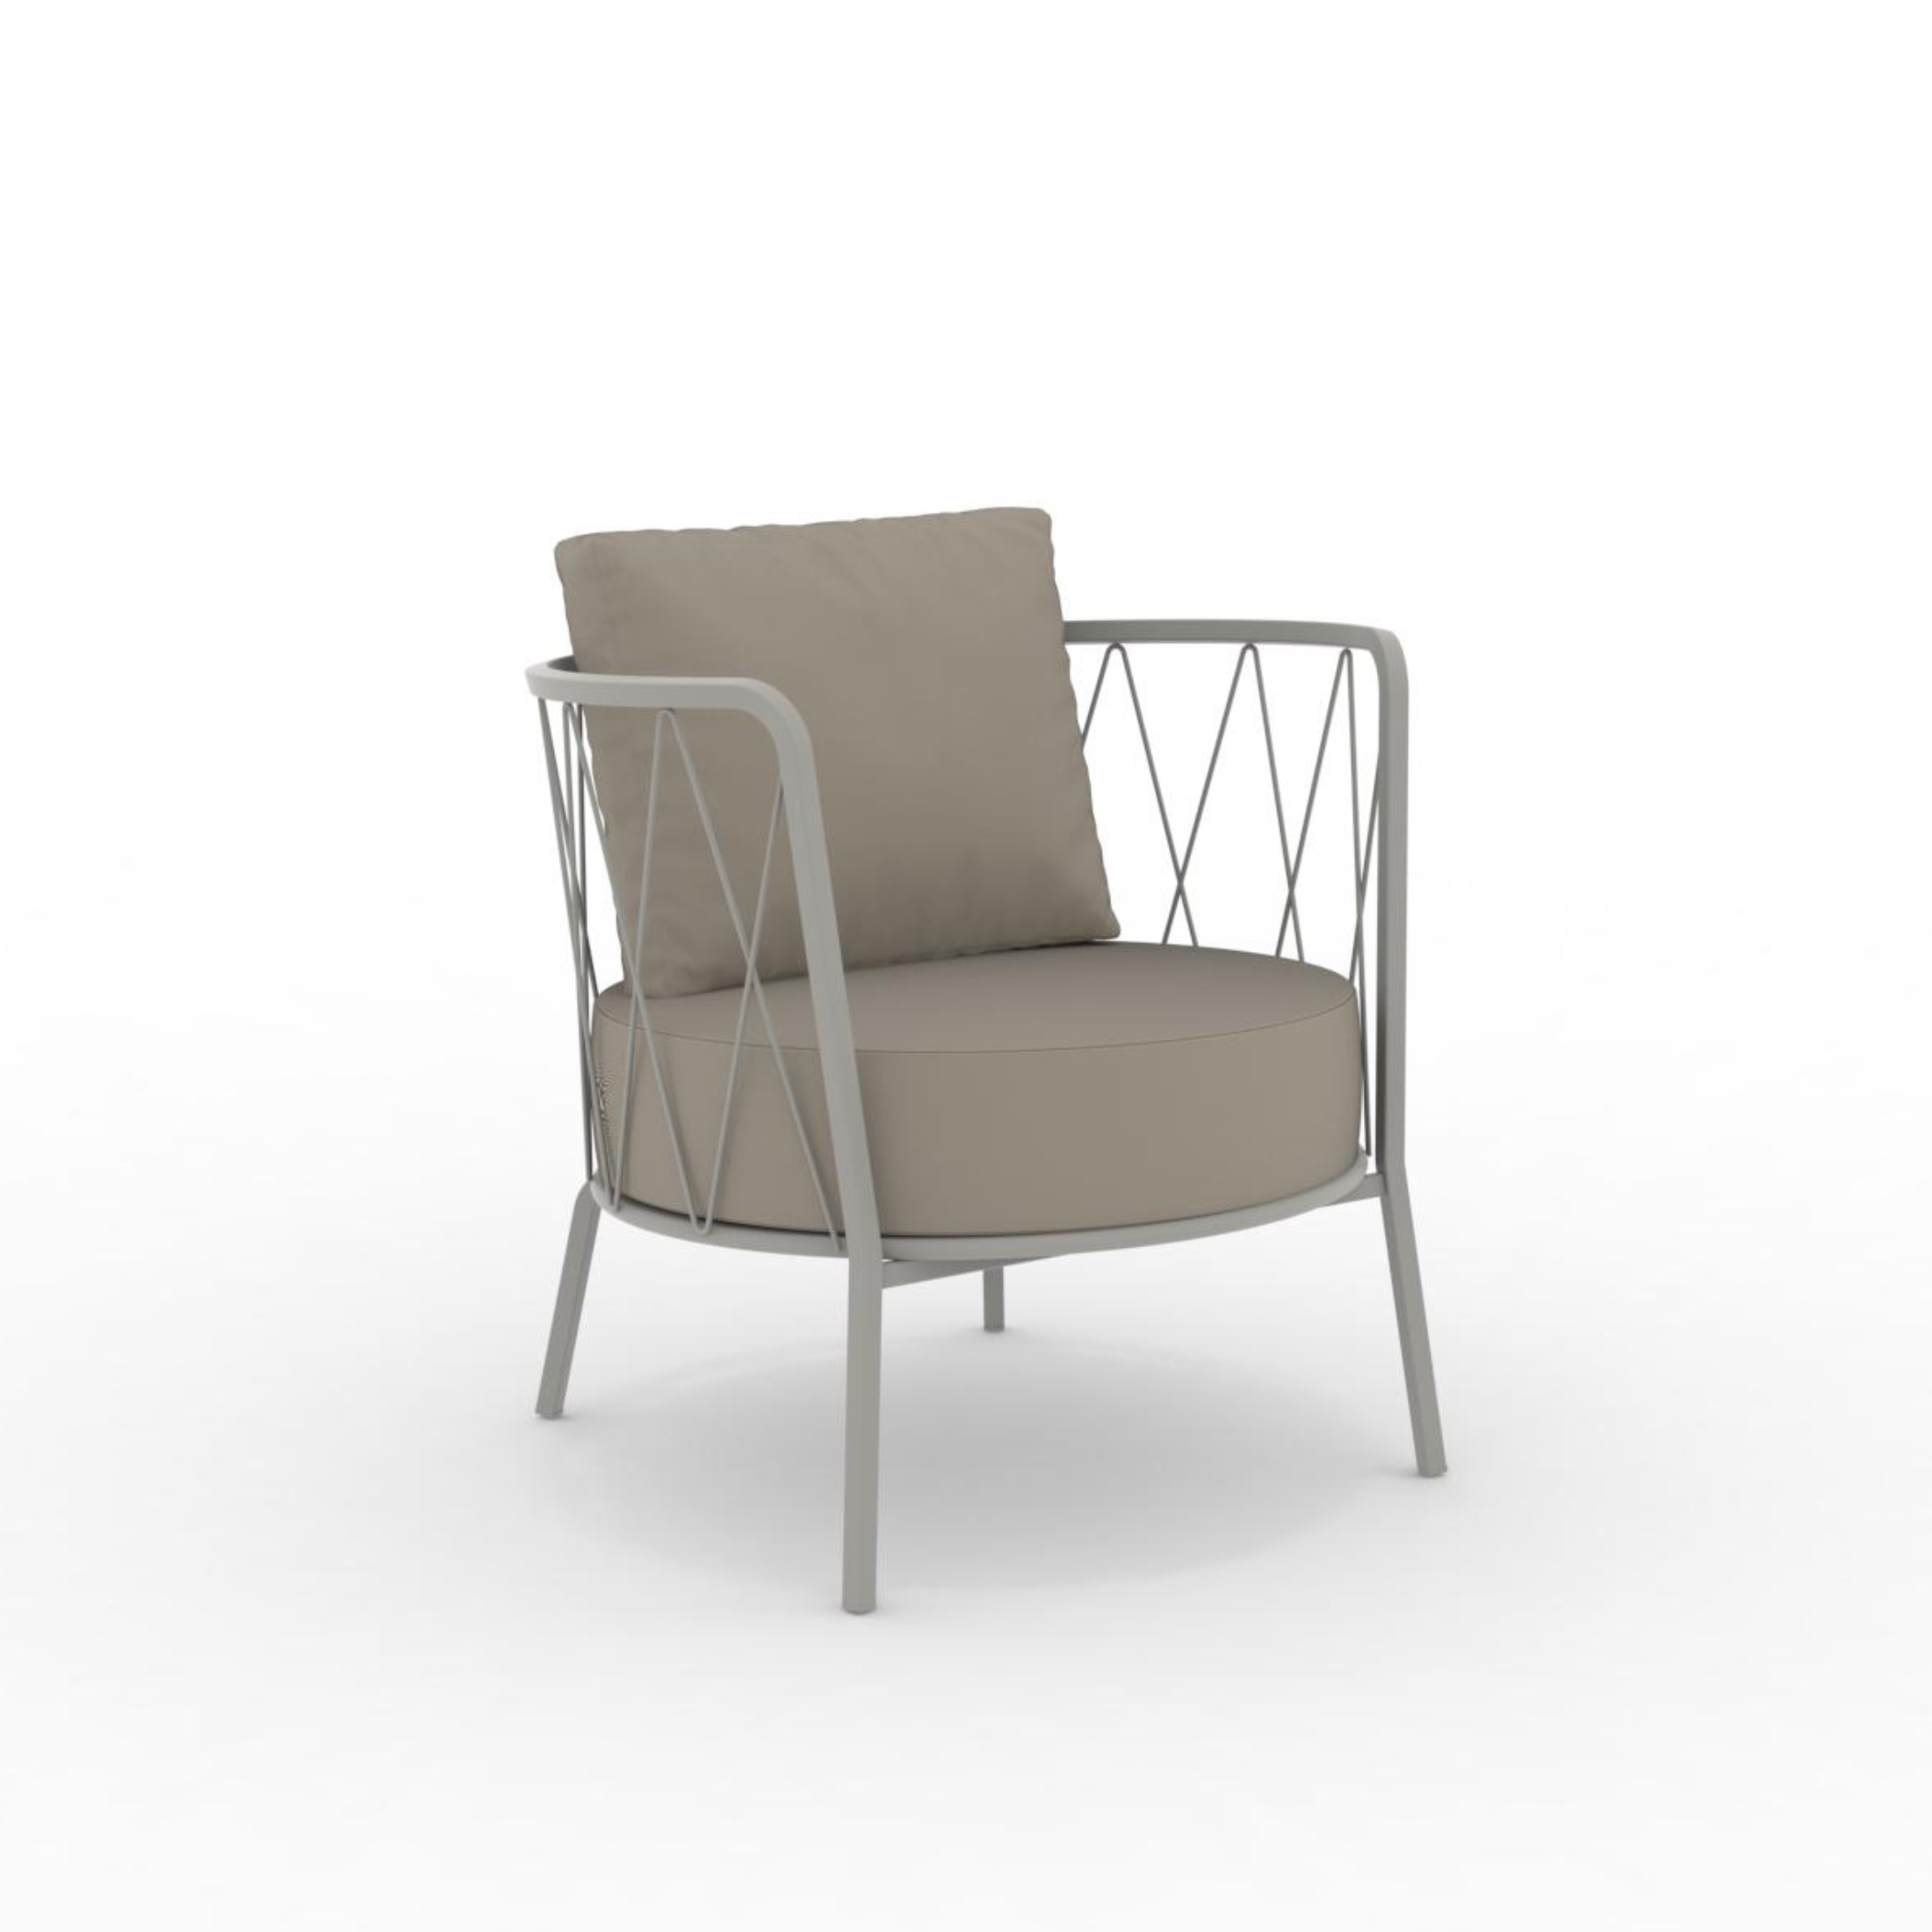 Sillón bajo de metal galvanizado "Daisy12" sillón de jardín 73x73 cm 71h